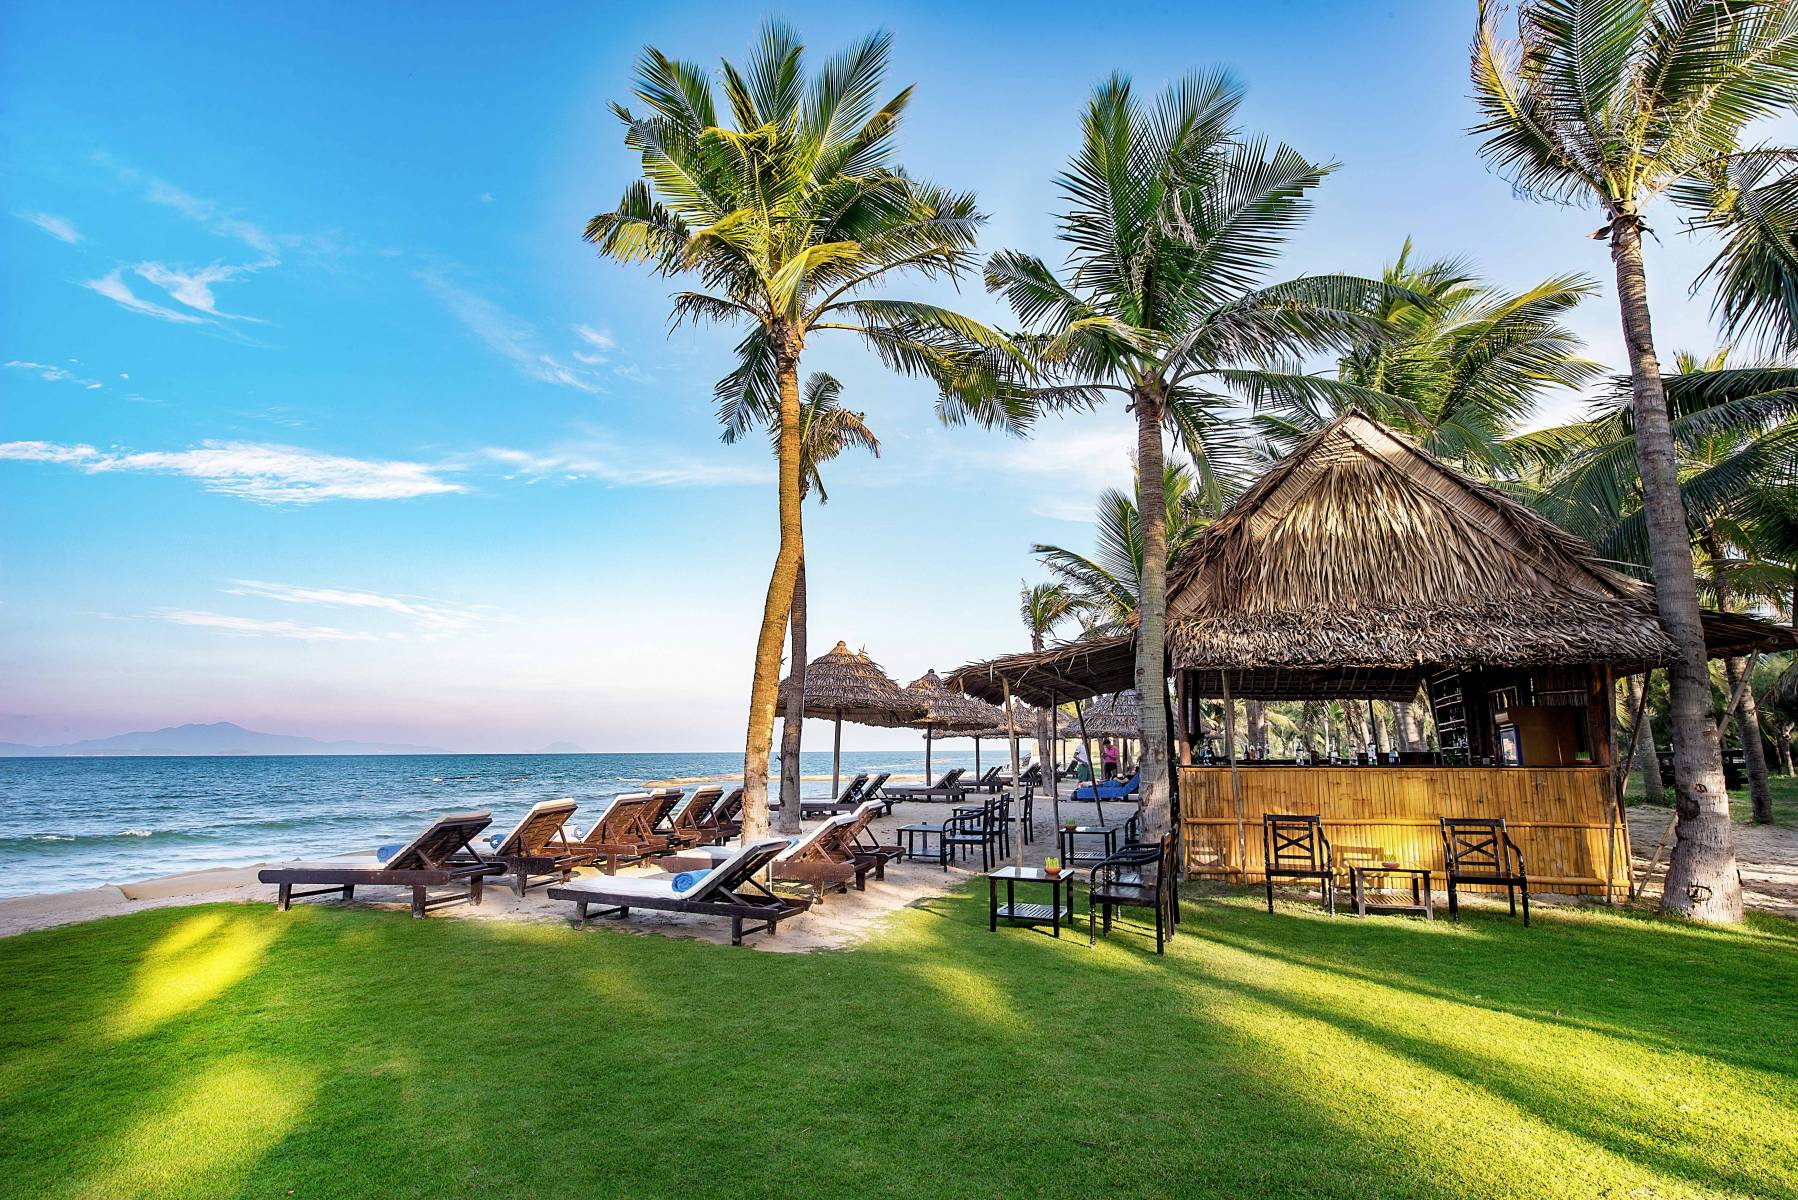 Hoi An Beach Resort - Resort chuẩn 4 sao nơi hội tụ của biển Cửa Đại và sông Đế Võng 25